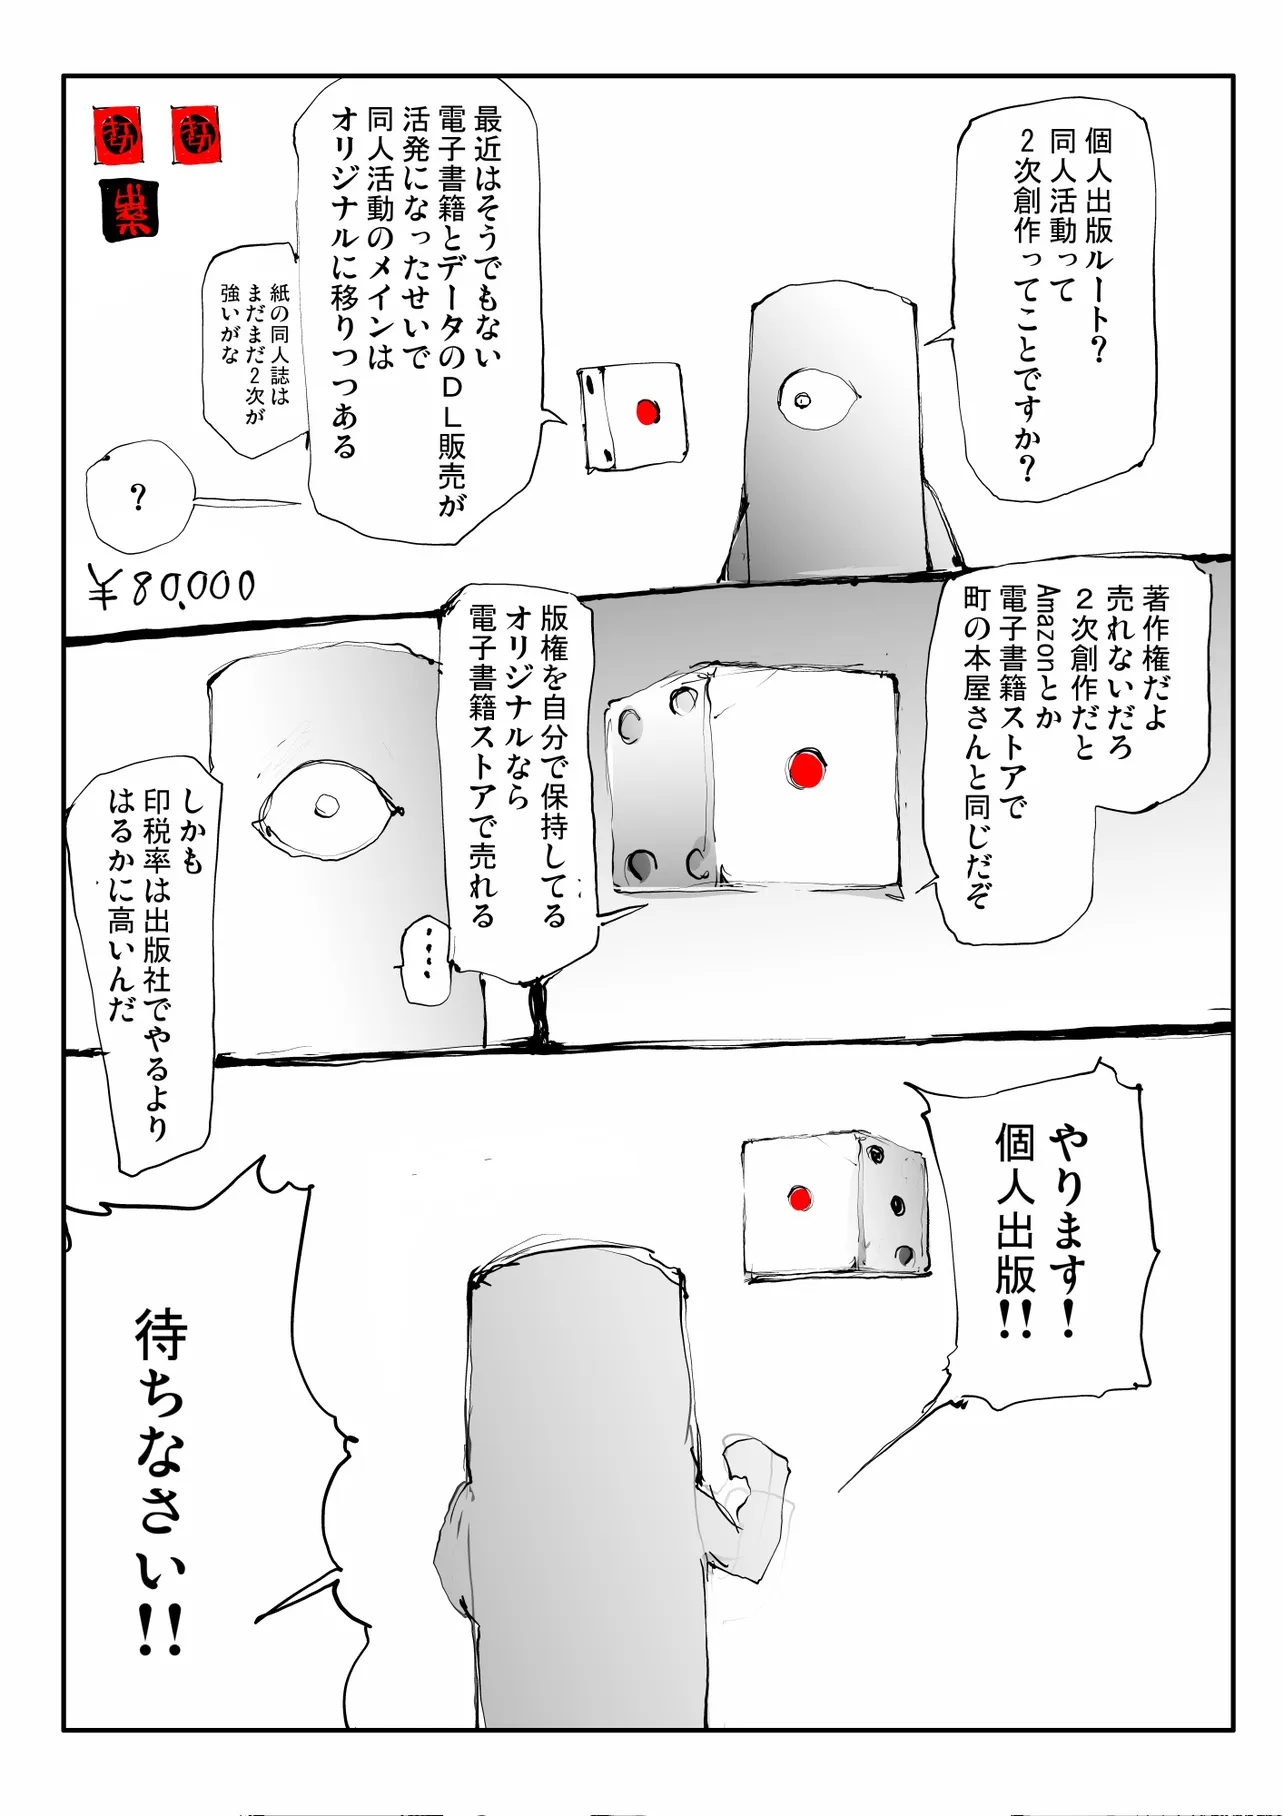 『まんが家すごろく』(31/48)